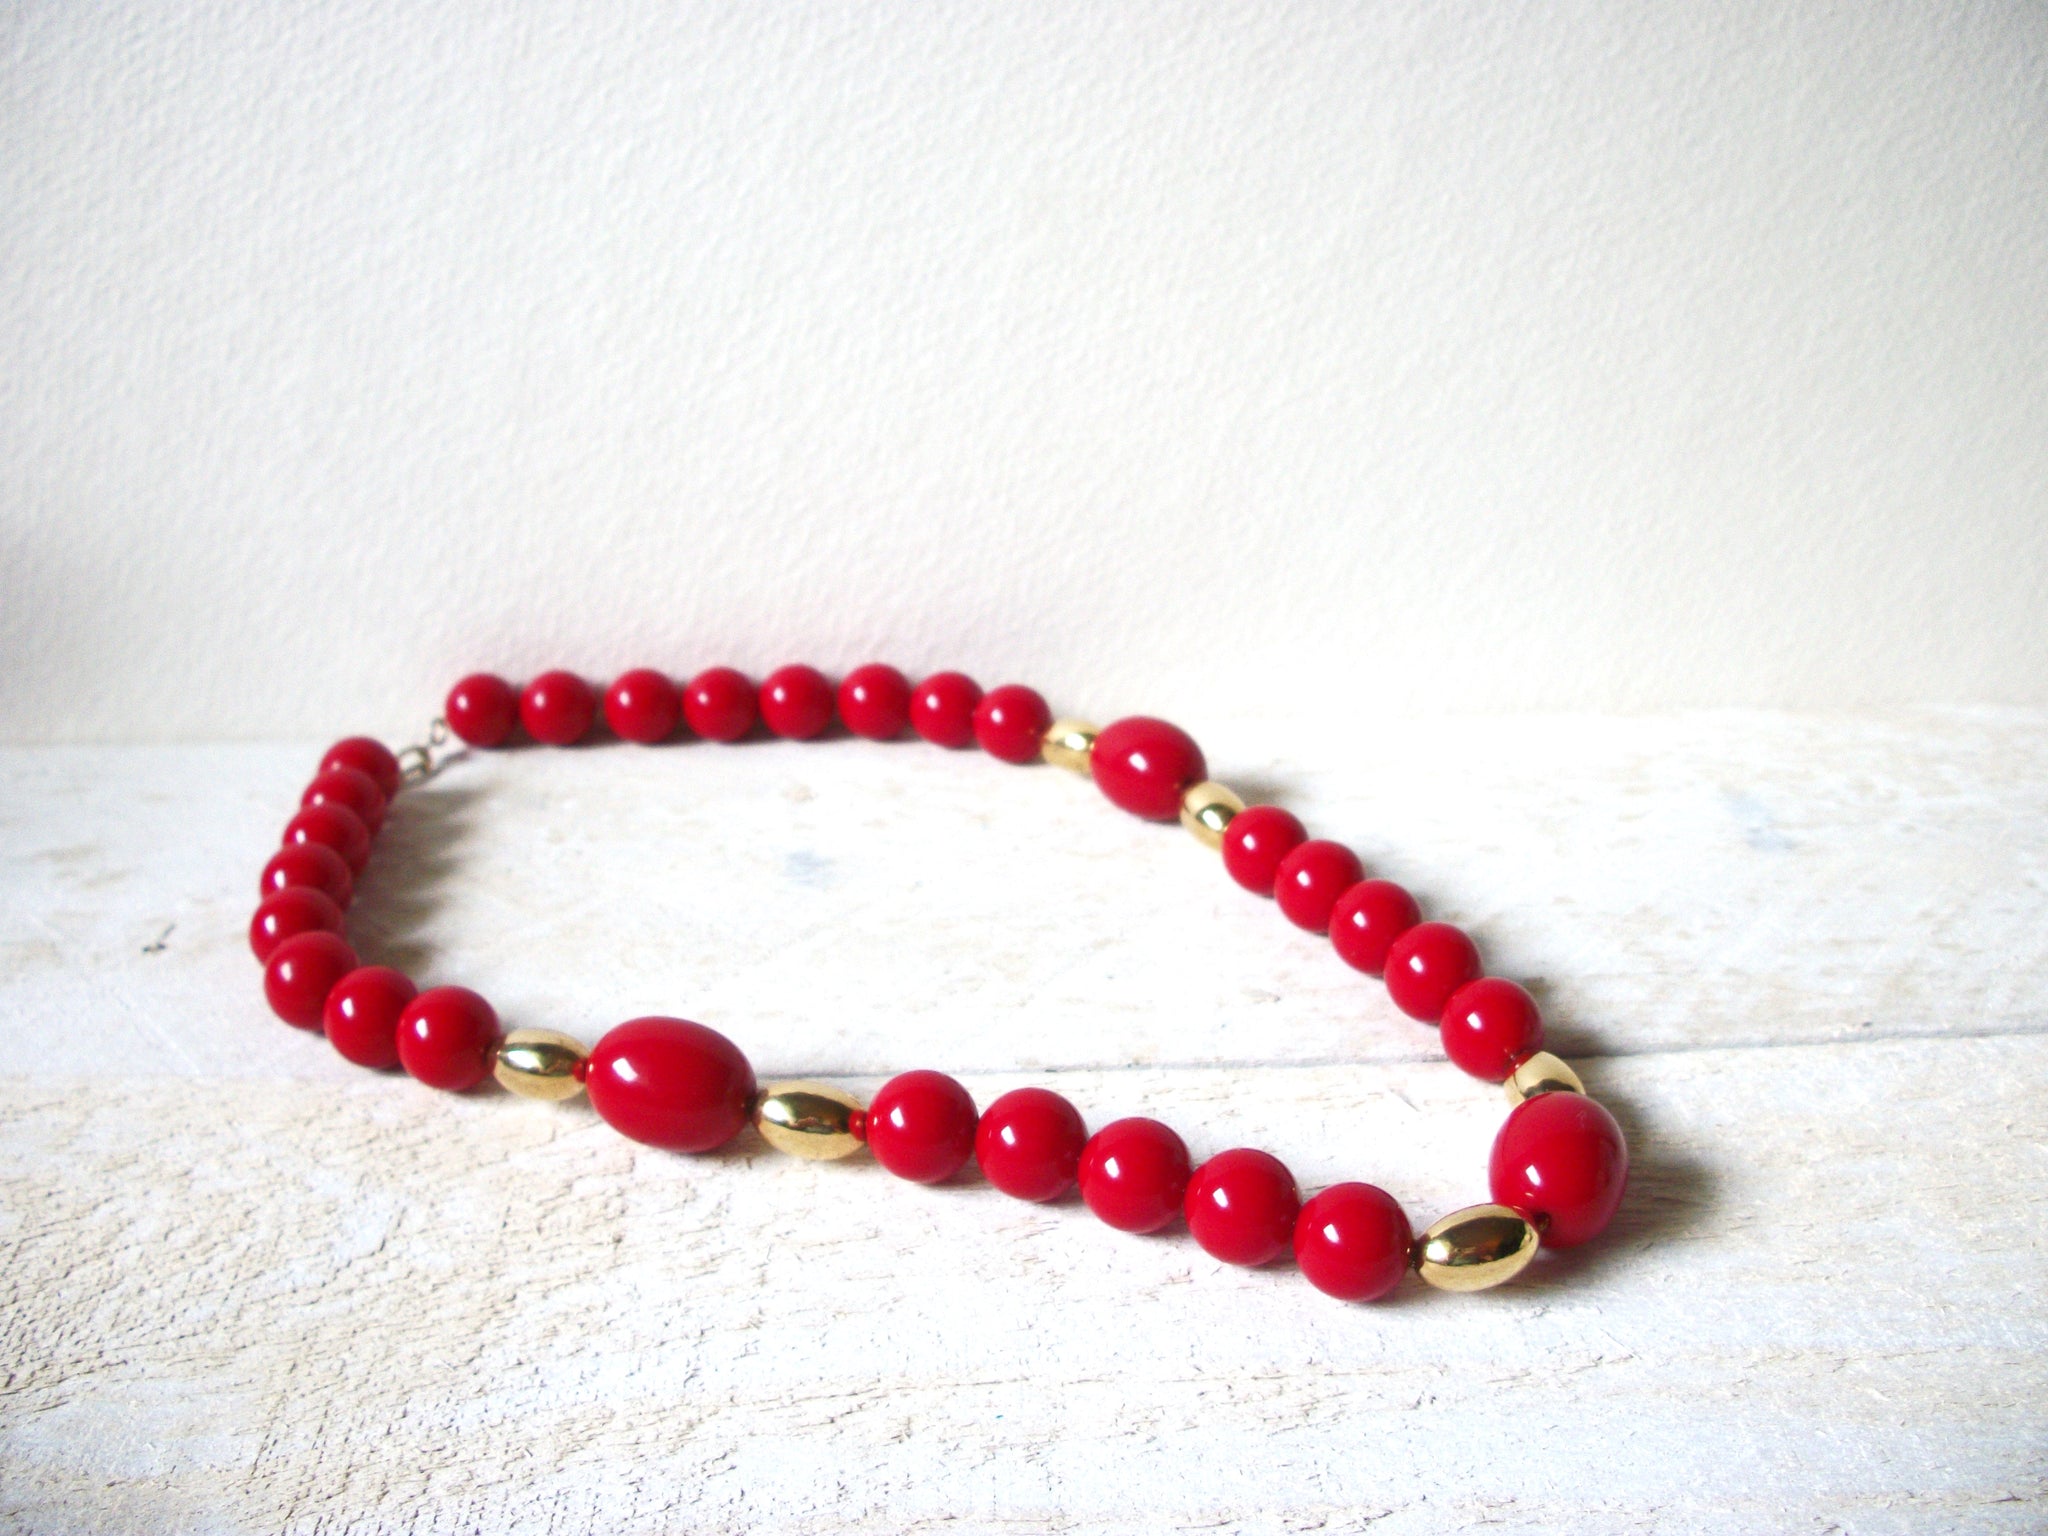 Vintage Red Gold Necklace 60720